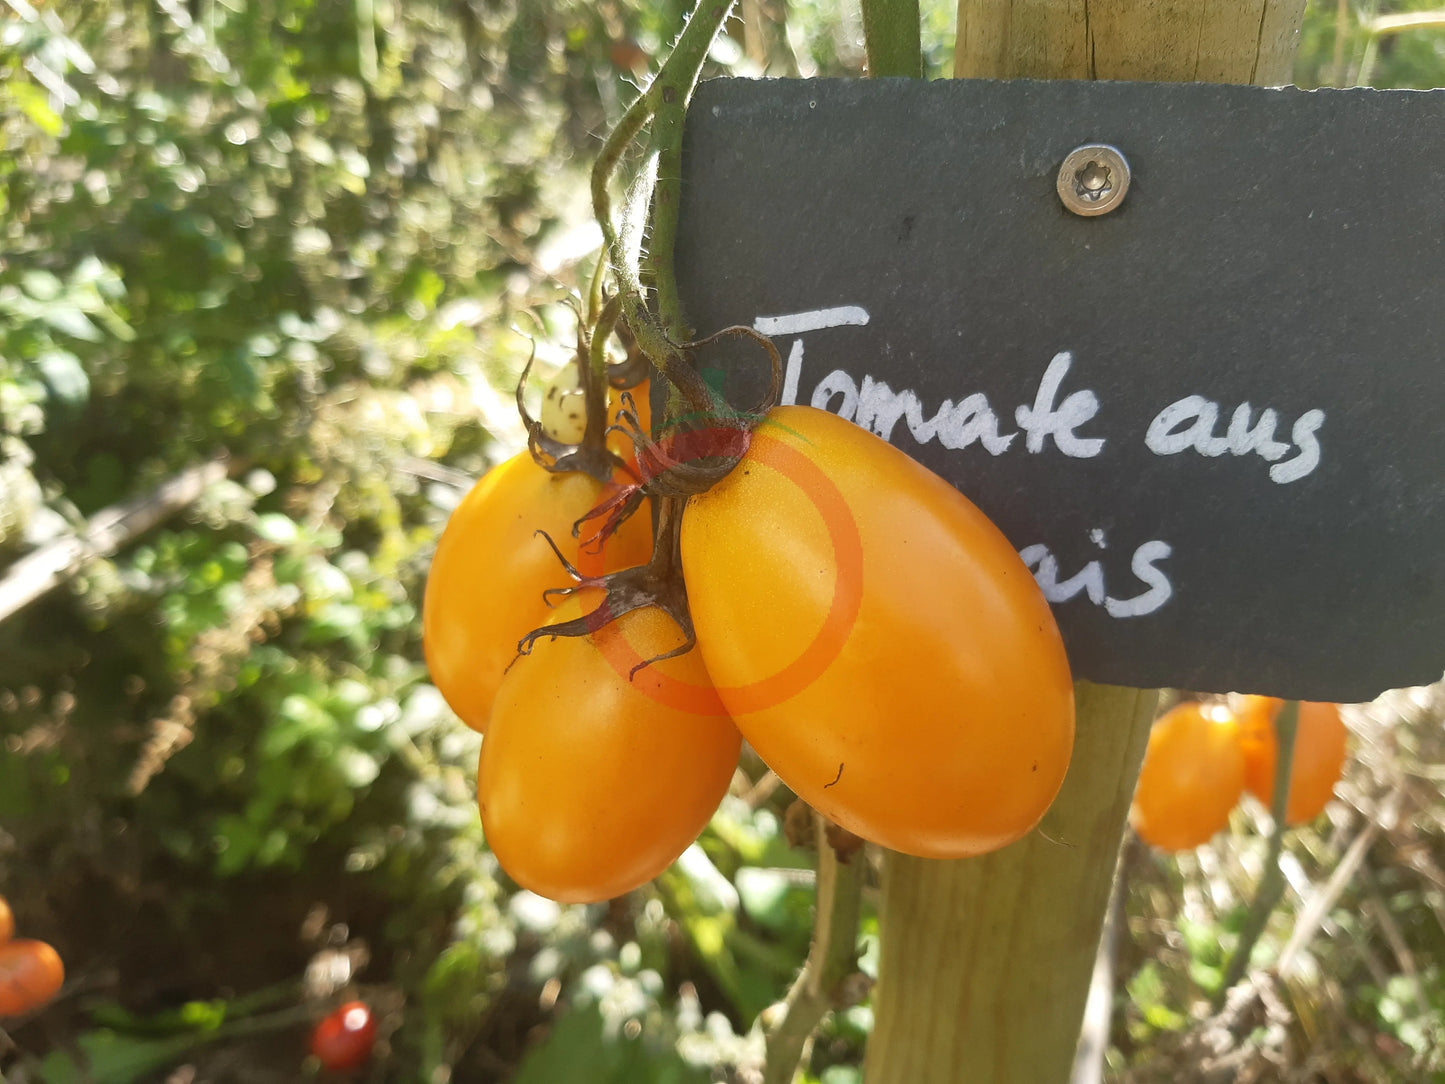 Tomate aus Ameis DER TOMATENFLÜSTERER